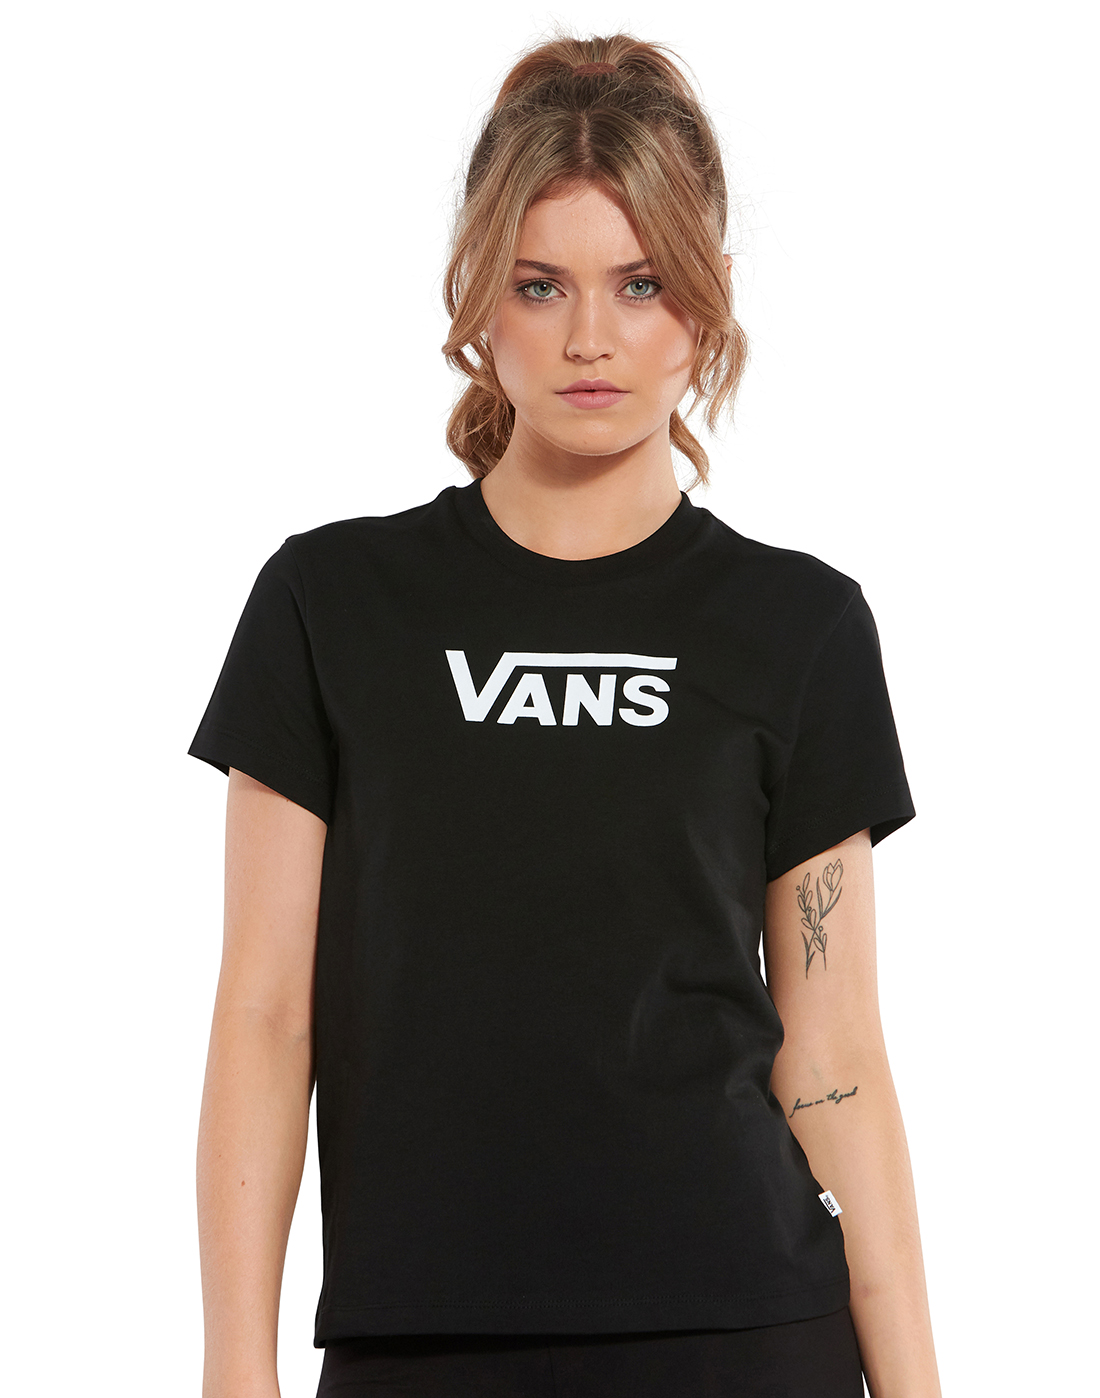 vans tshirt for women